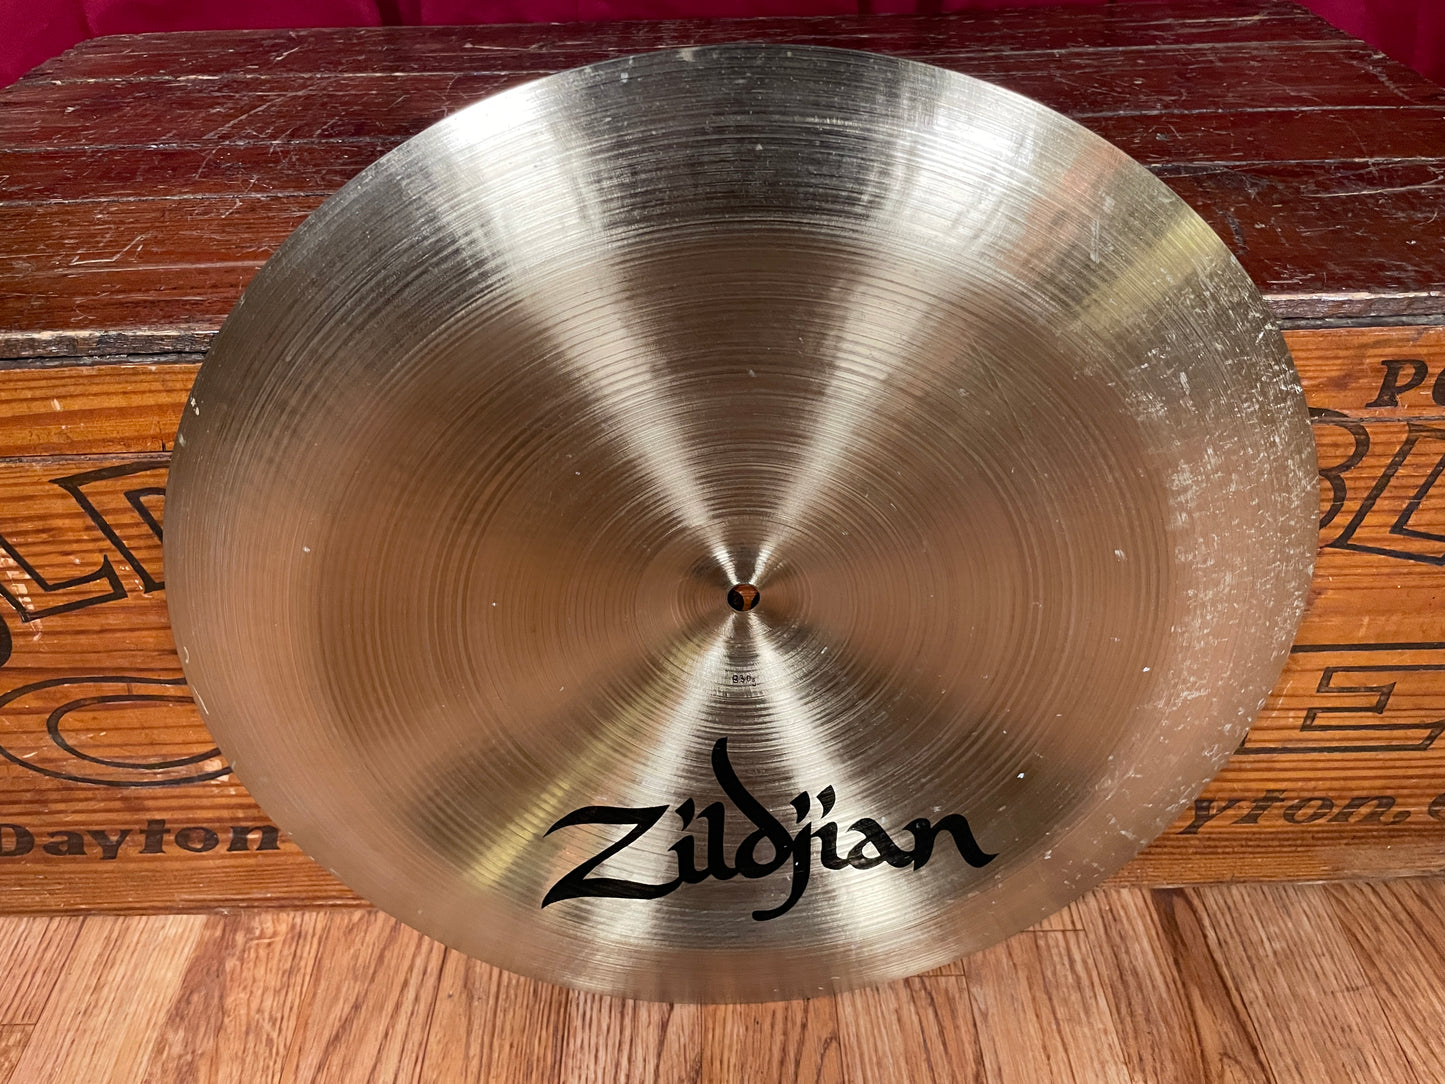 16" Zildjian A Early 1990s China Boy High Cymbal 830g *Video Demo*